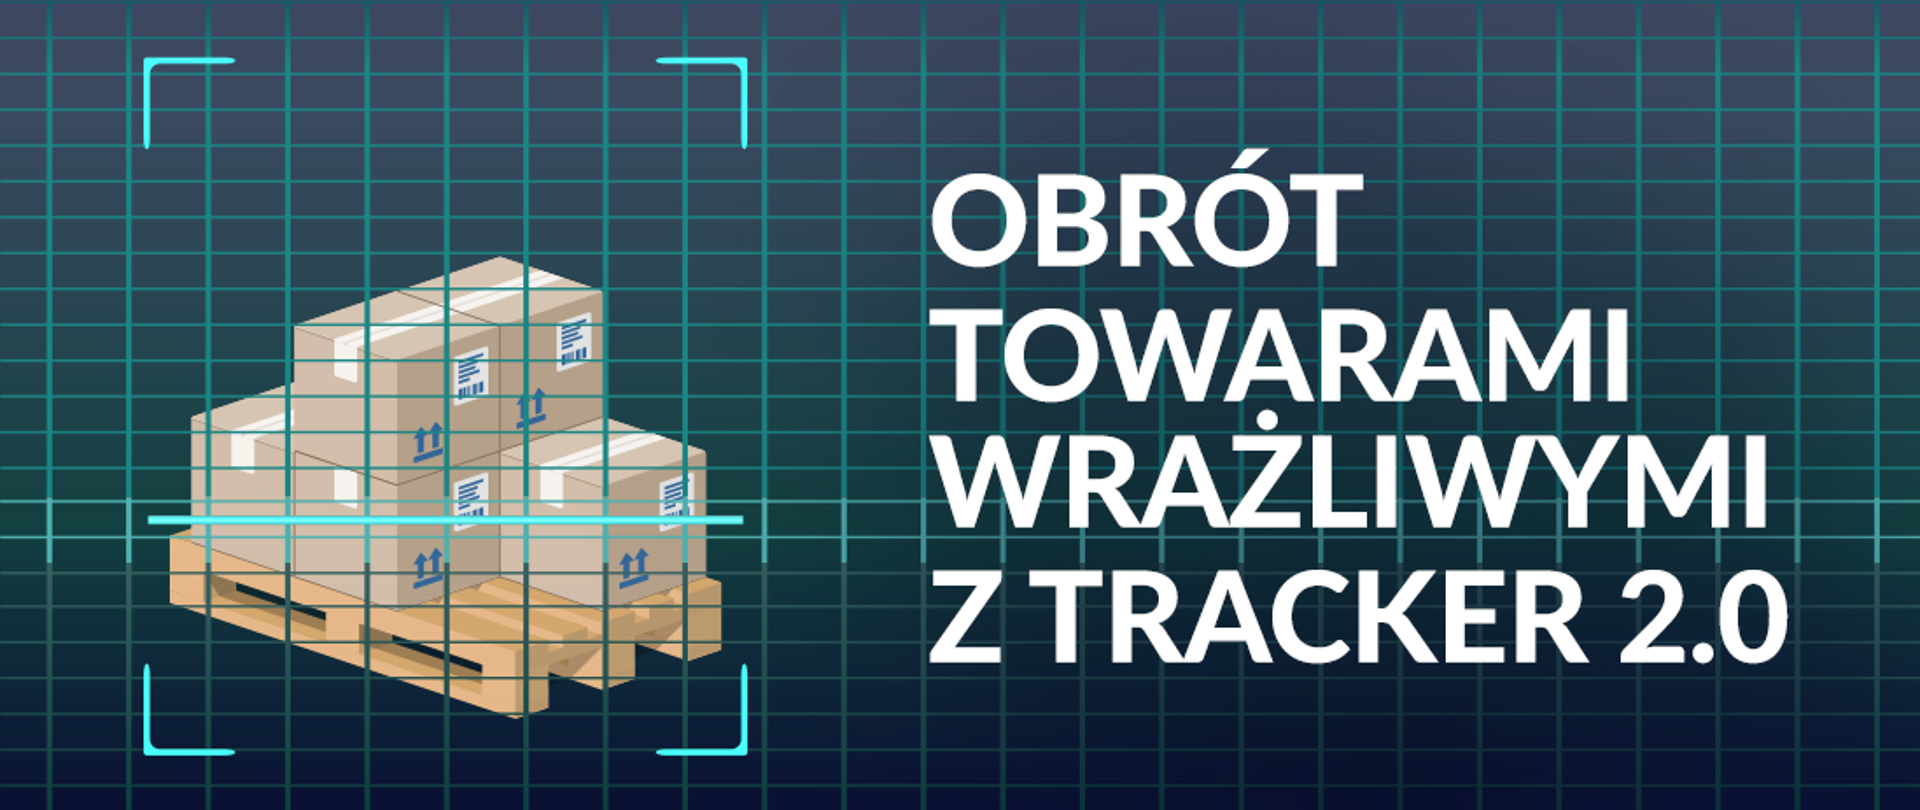 grafika o treści: "obrót towarami wrażliwymi z tracker 2.0" przedstawiająca skanowaną paletę z kartonami